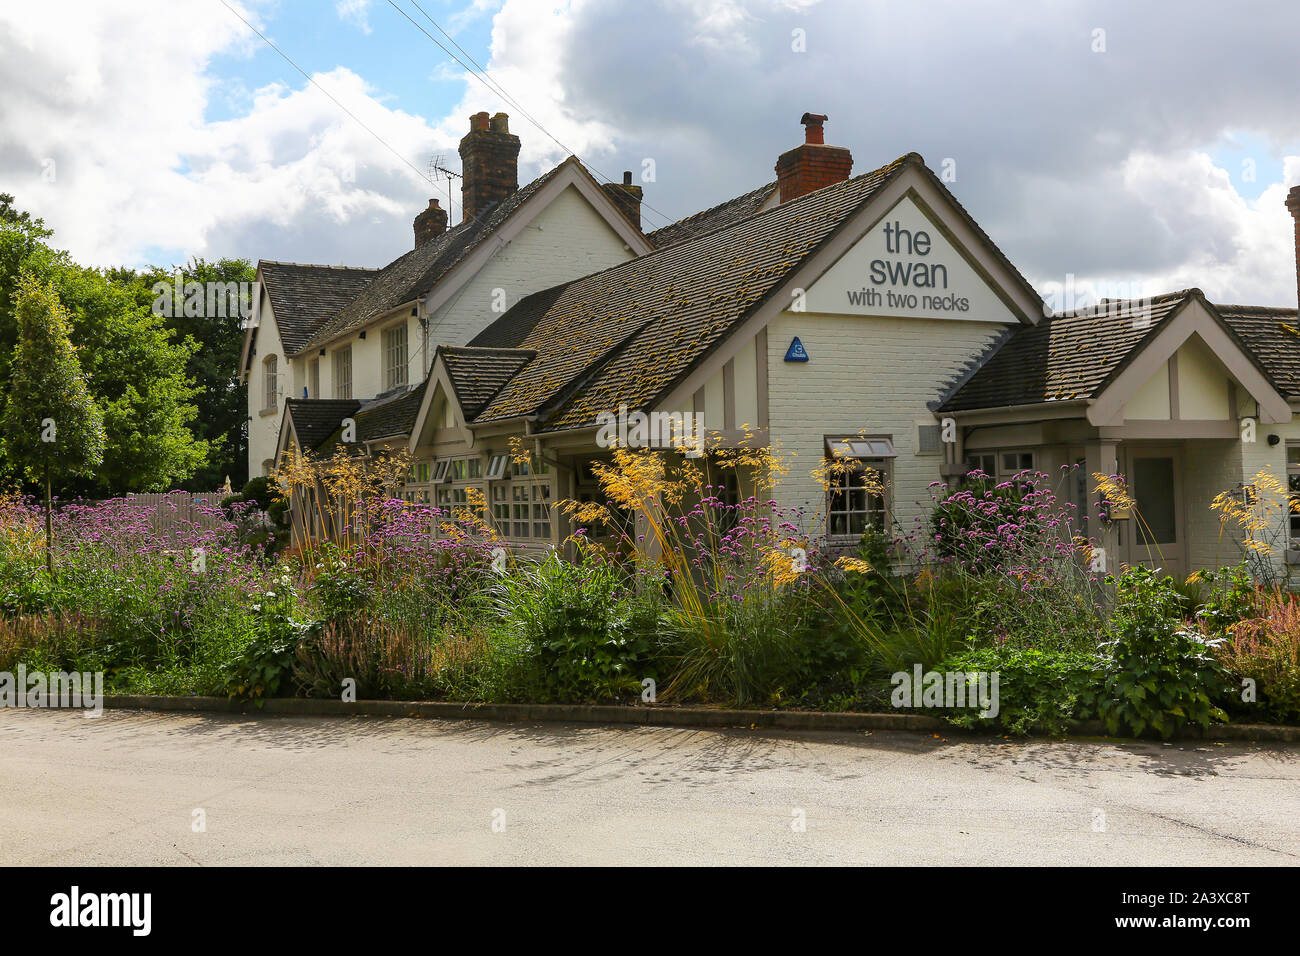 Il Cigno con due colli pub o public house, Blackbrook, Newcastle under Lyme, Staffordshire, England, Regno Unito Foto Stock